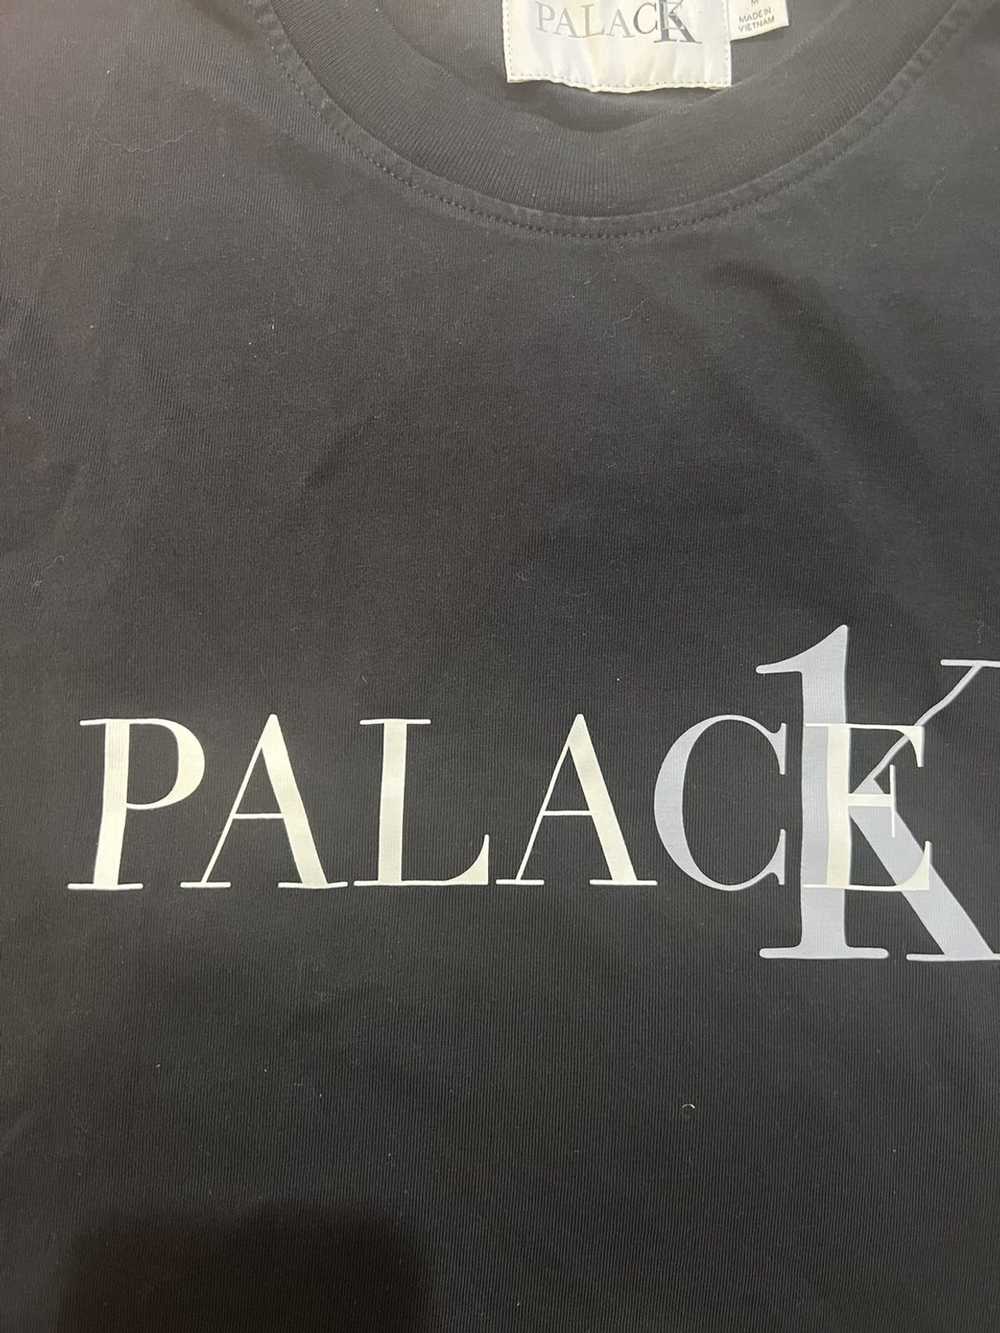 Calvin Klein × Palace Palace x CK - image 2